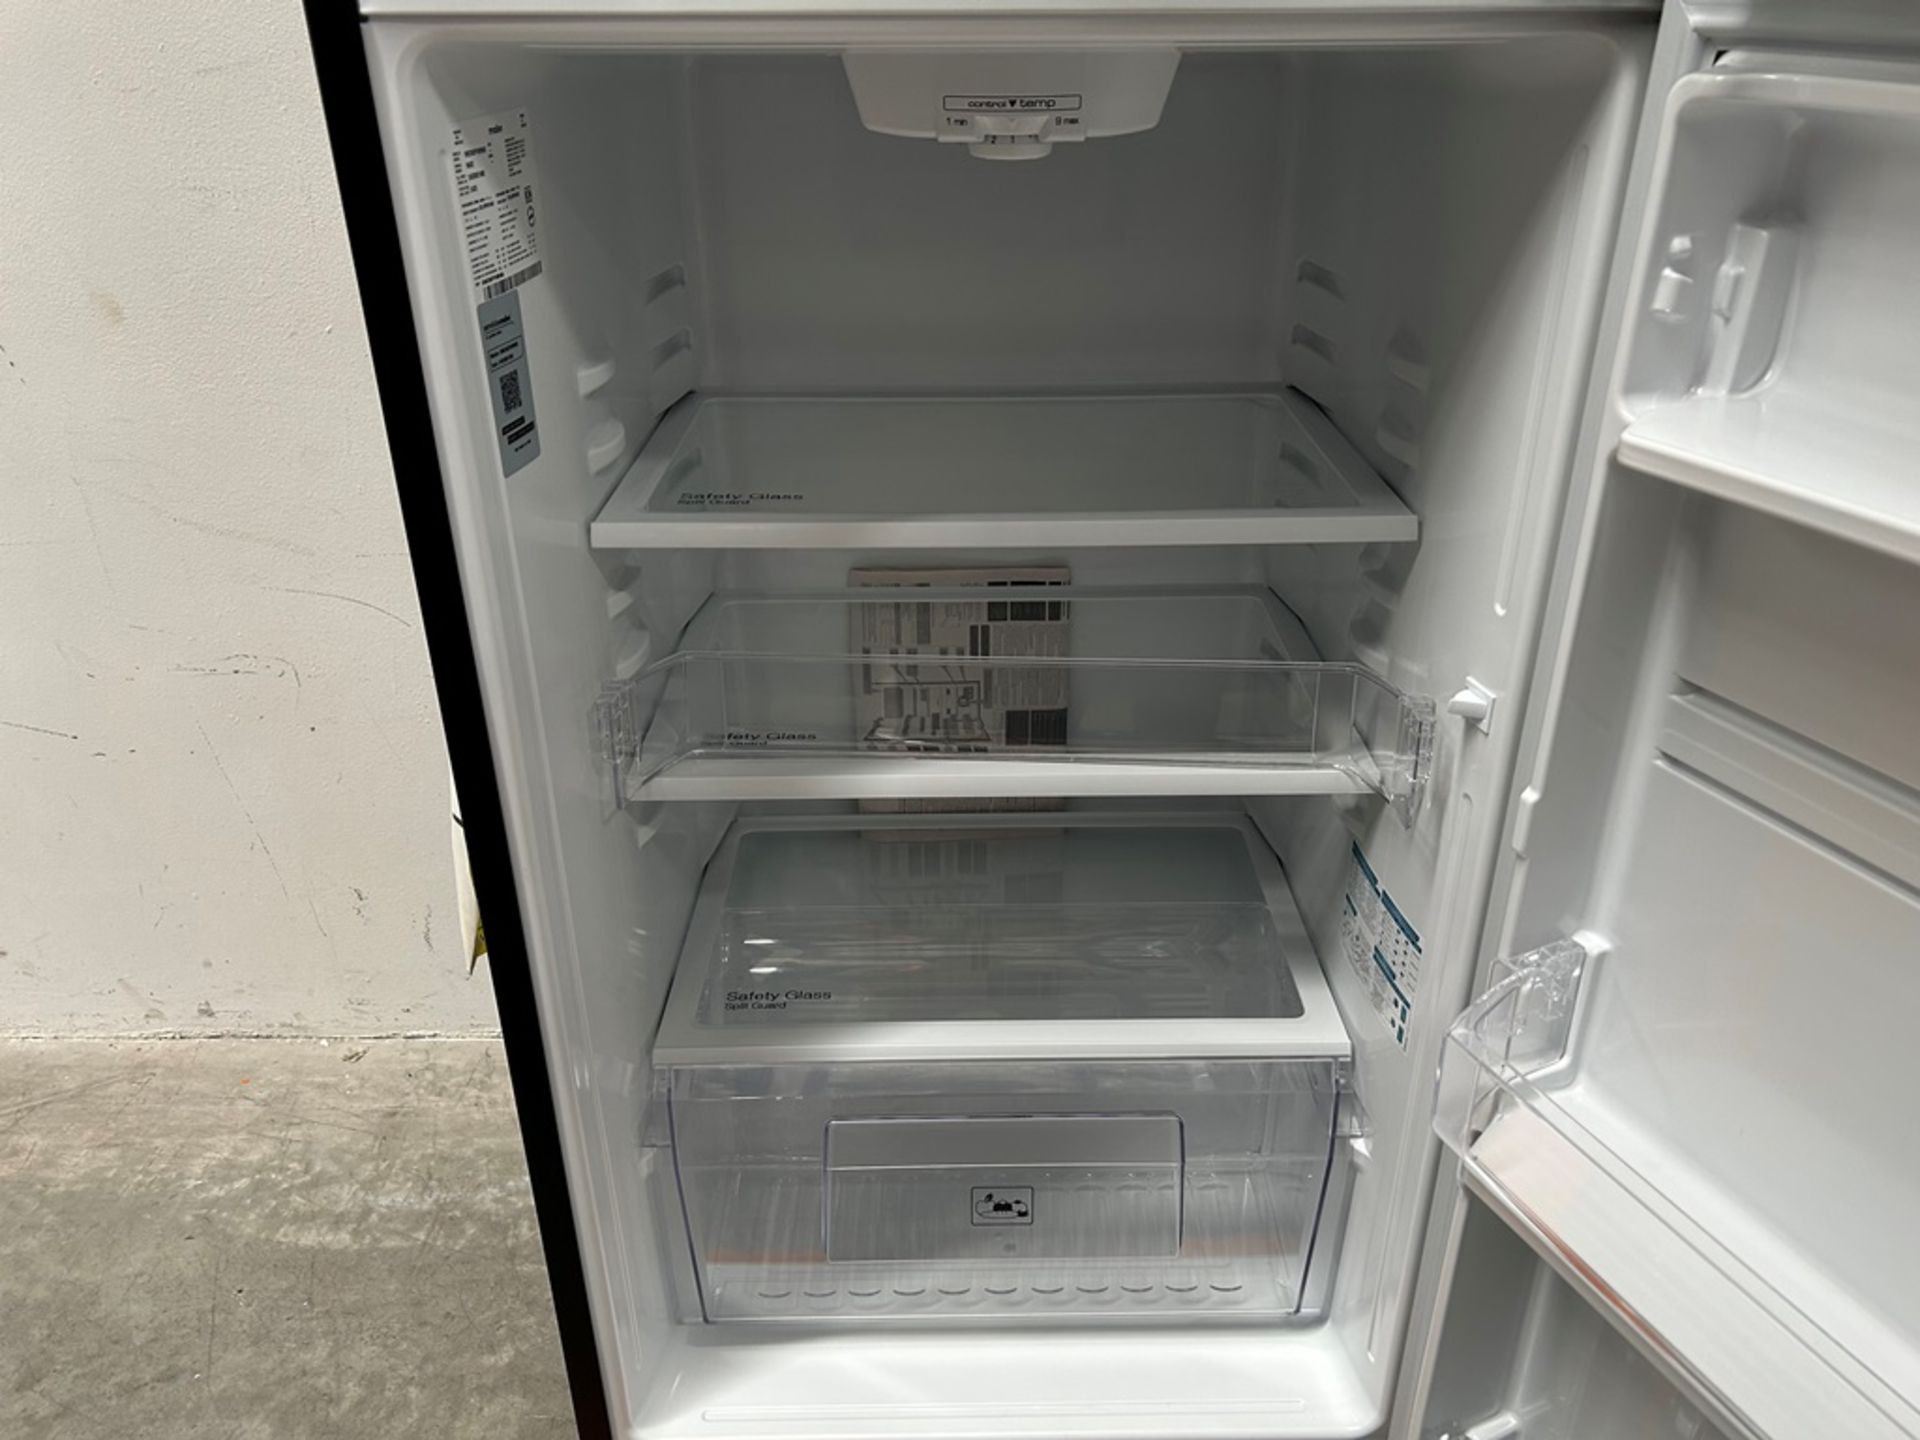 Lote de 2 refrigeradores contiene: 1 refrigerador Marca MABE, Modelo RME360PVMRM, Serie 01988, Colo - Image 13 of 18